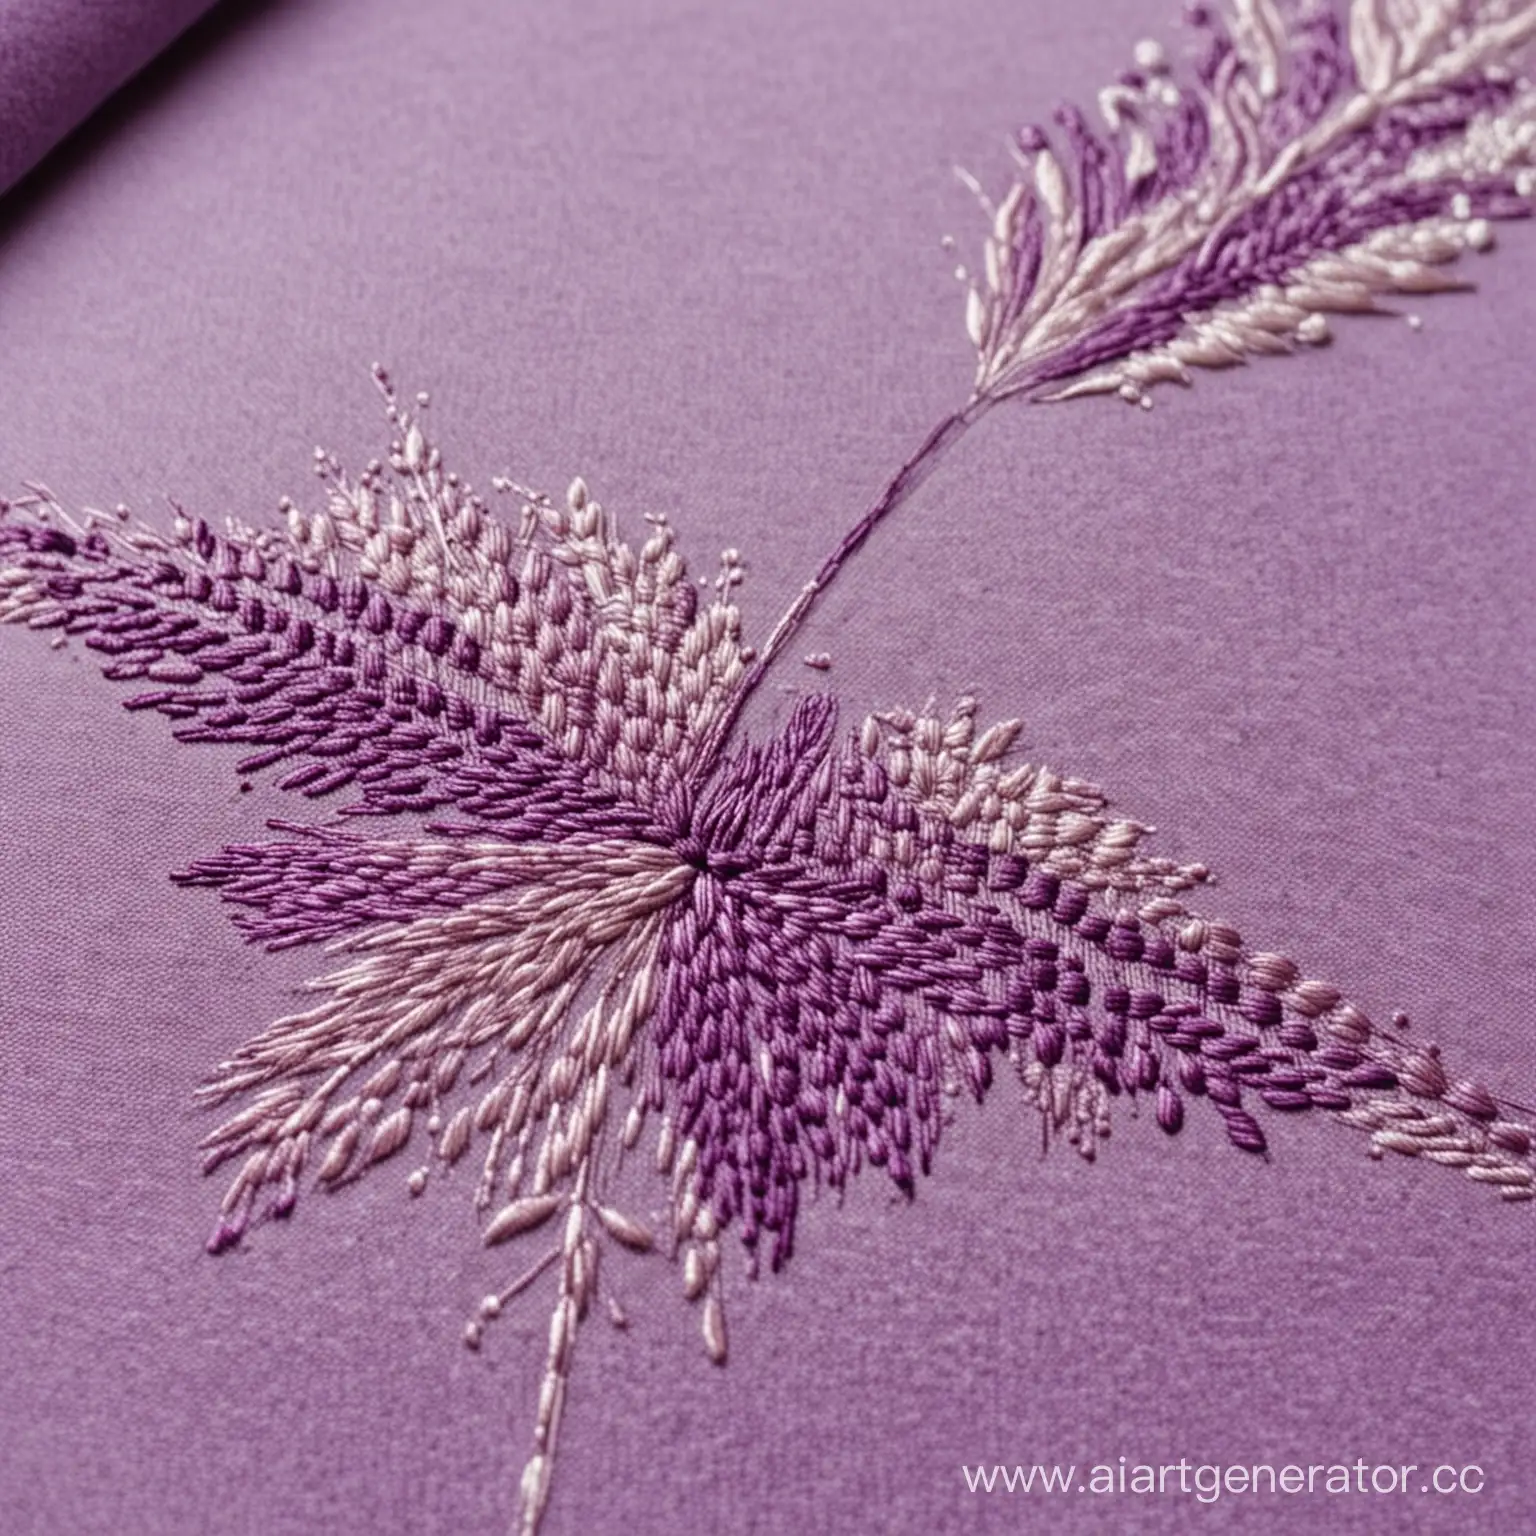 Процесс вышивания на текстиле, принт готов на 70%, игла входит в ткань, всё в фиолетовых тонах